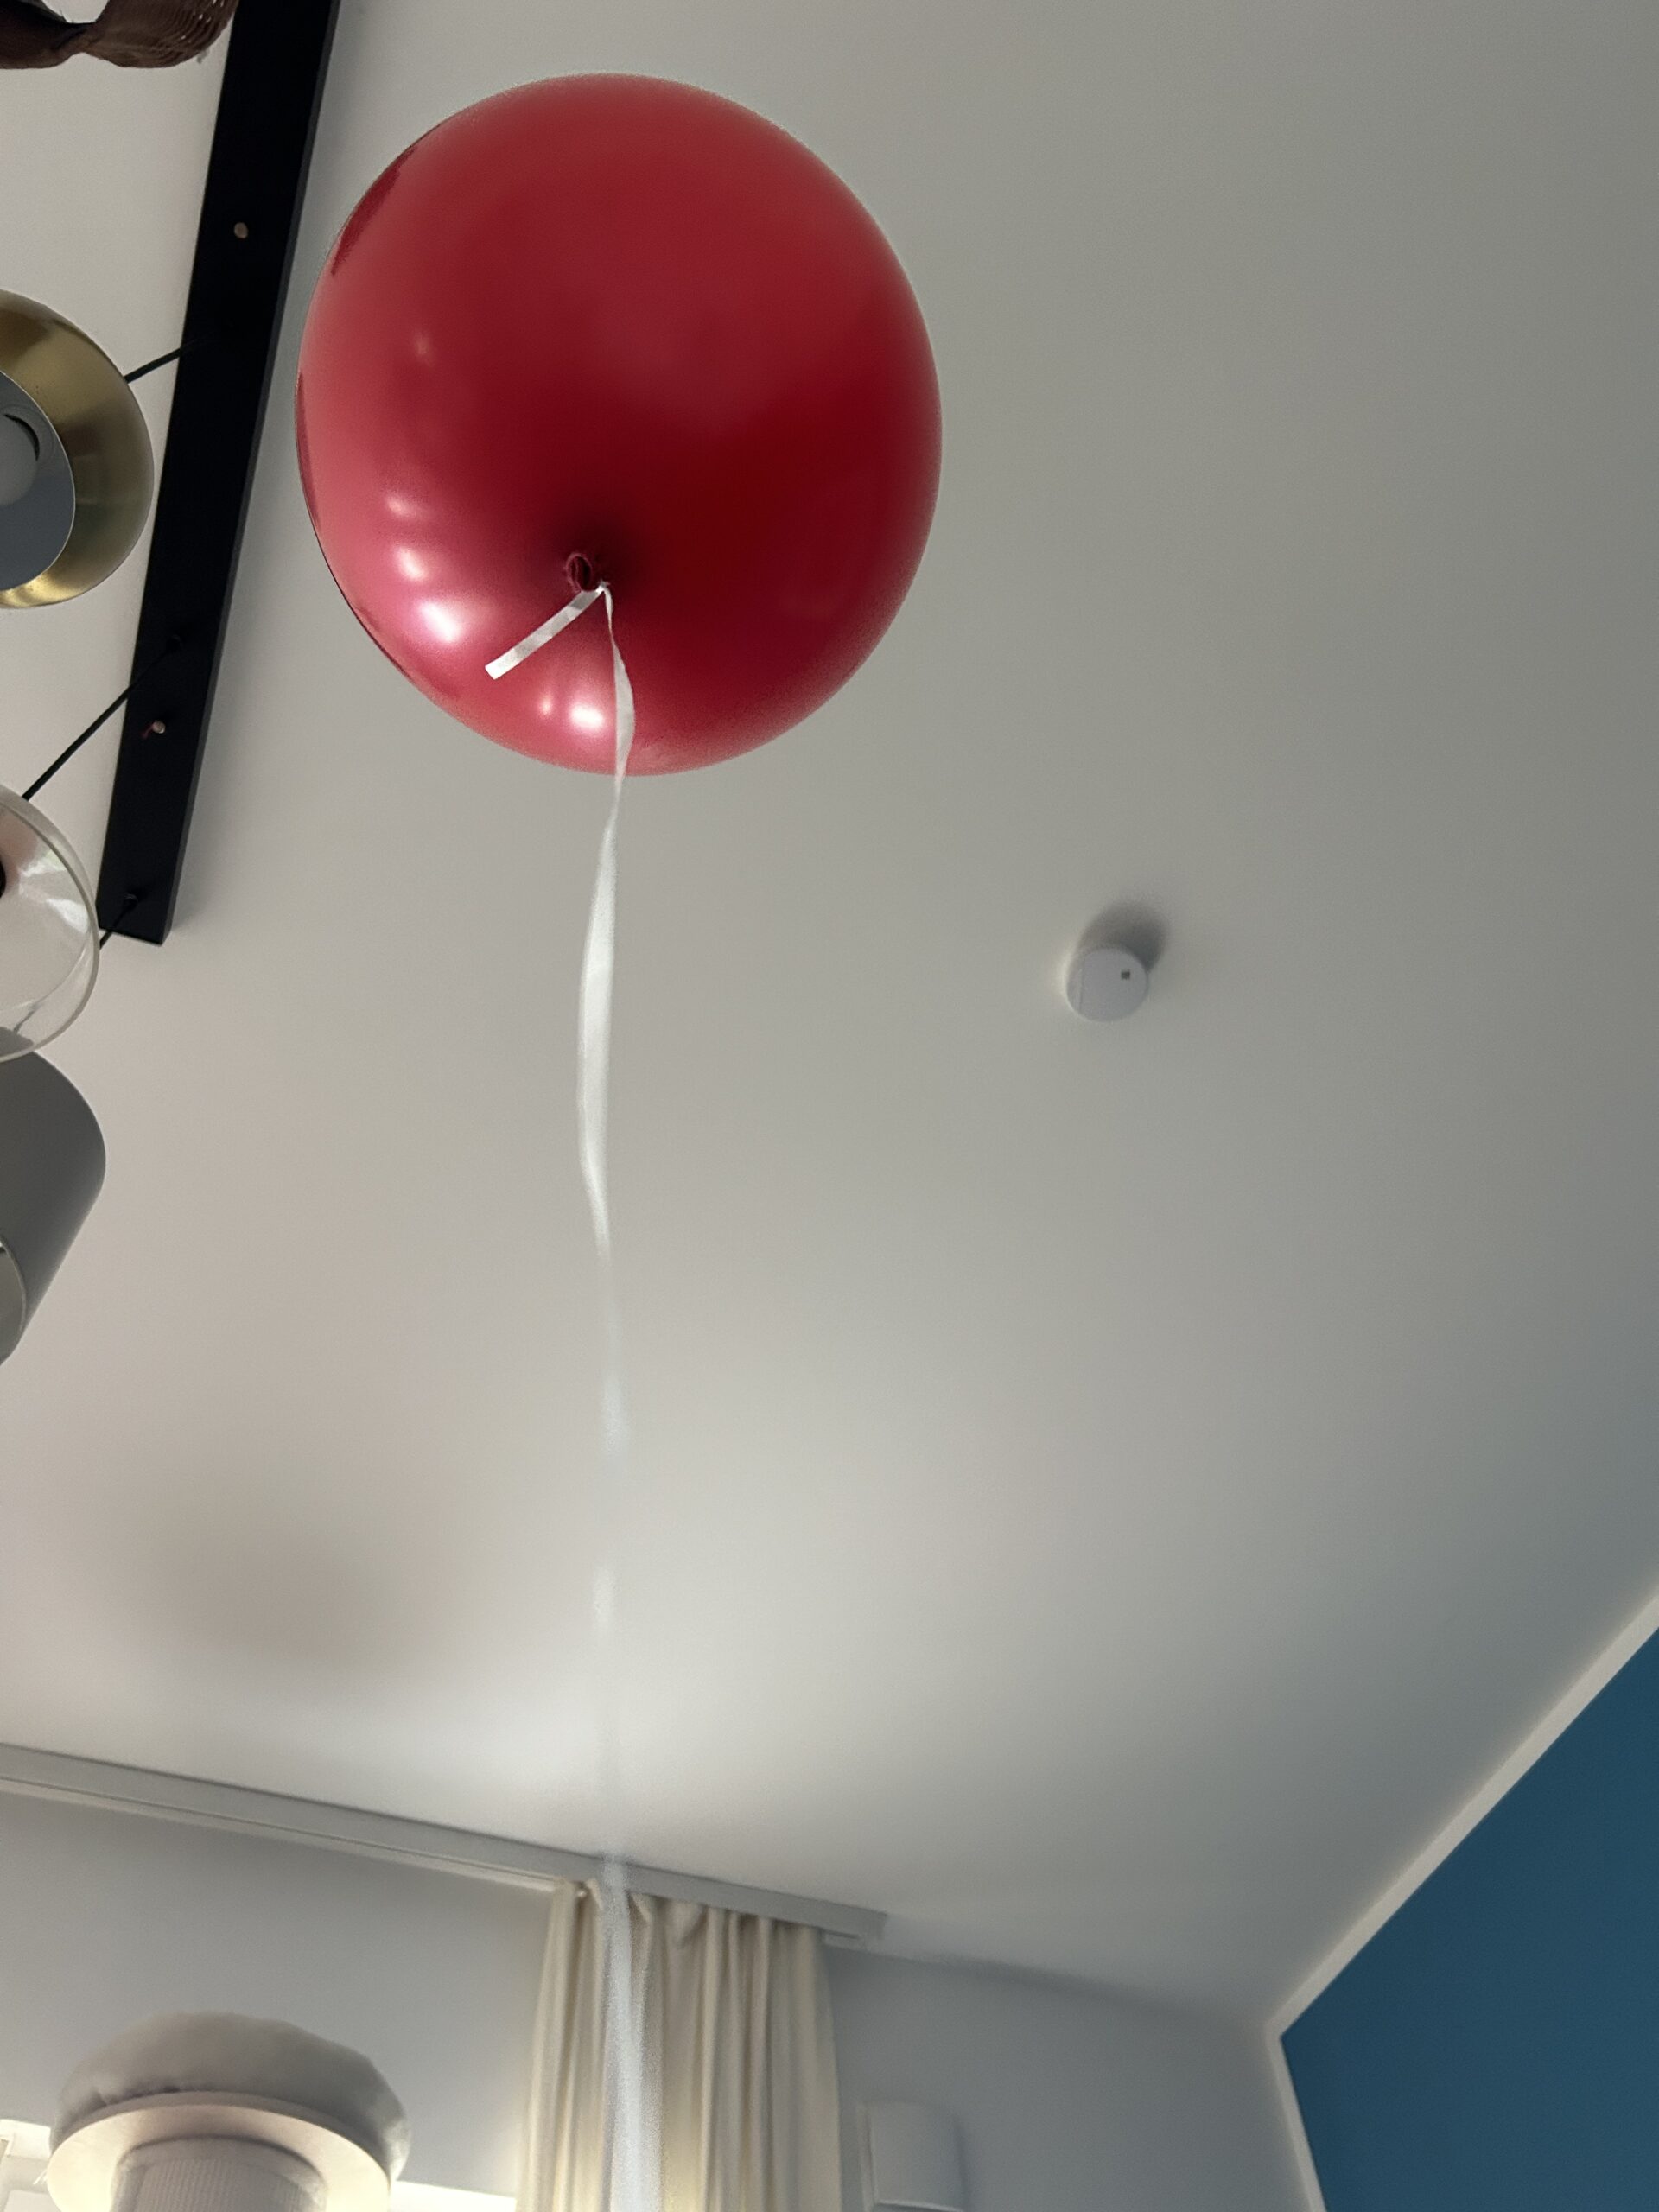 Von gestern sind noch Ballons übrig. Einer fliegt durchs Wohnzimmer.